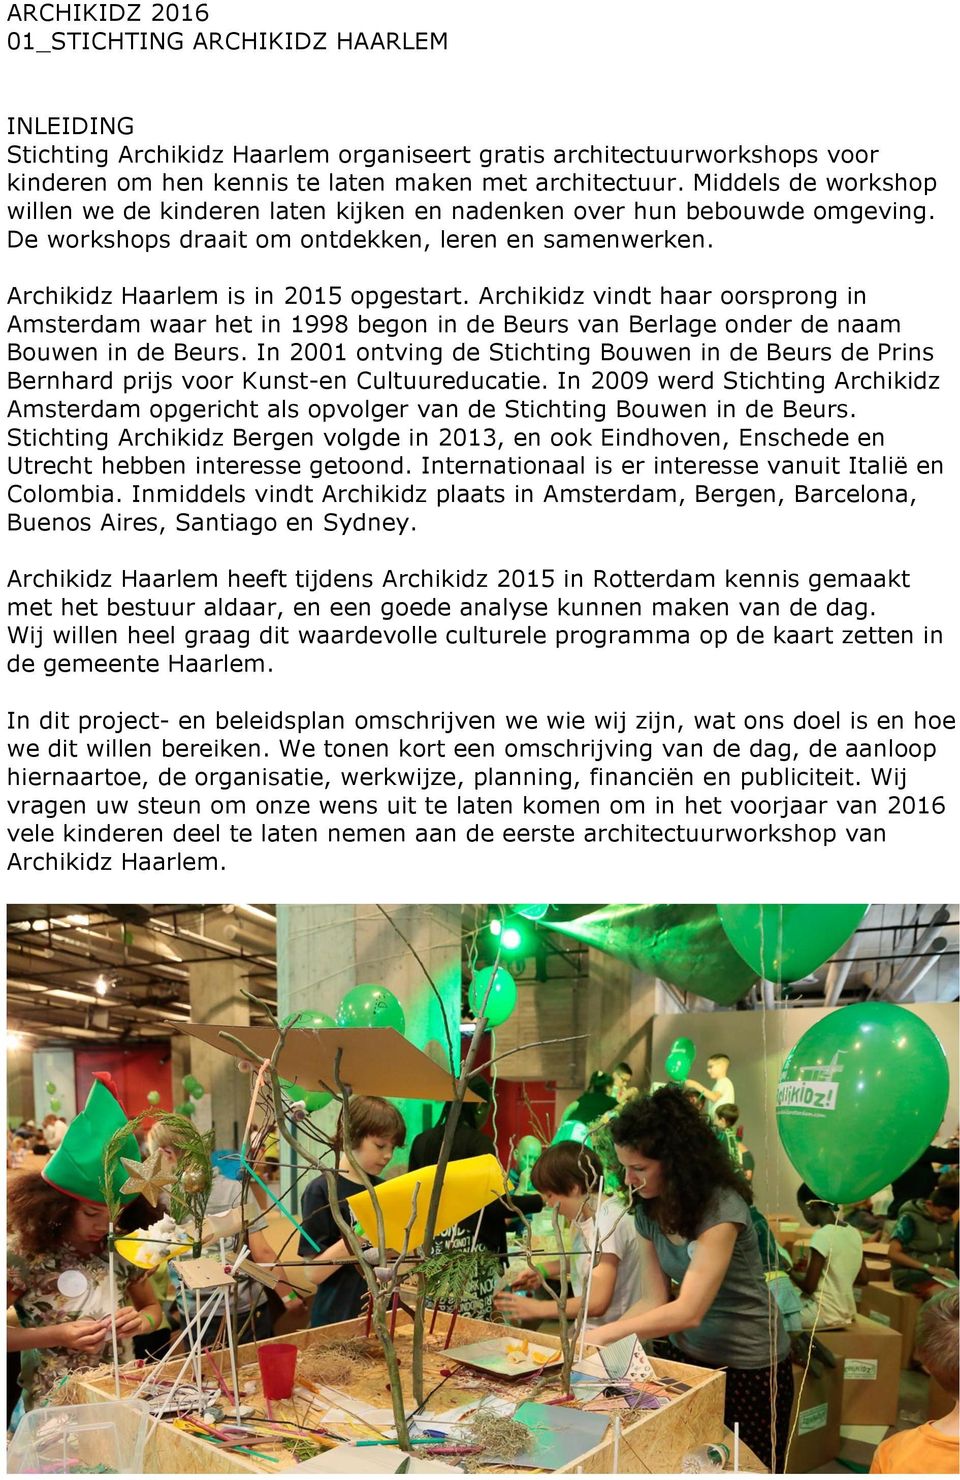 Archikidz vindt haar oorsprong in Amsterdam waar het in 1998 begon in de Beurs van Berlage onder de naam Bouwen in de Beurs.